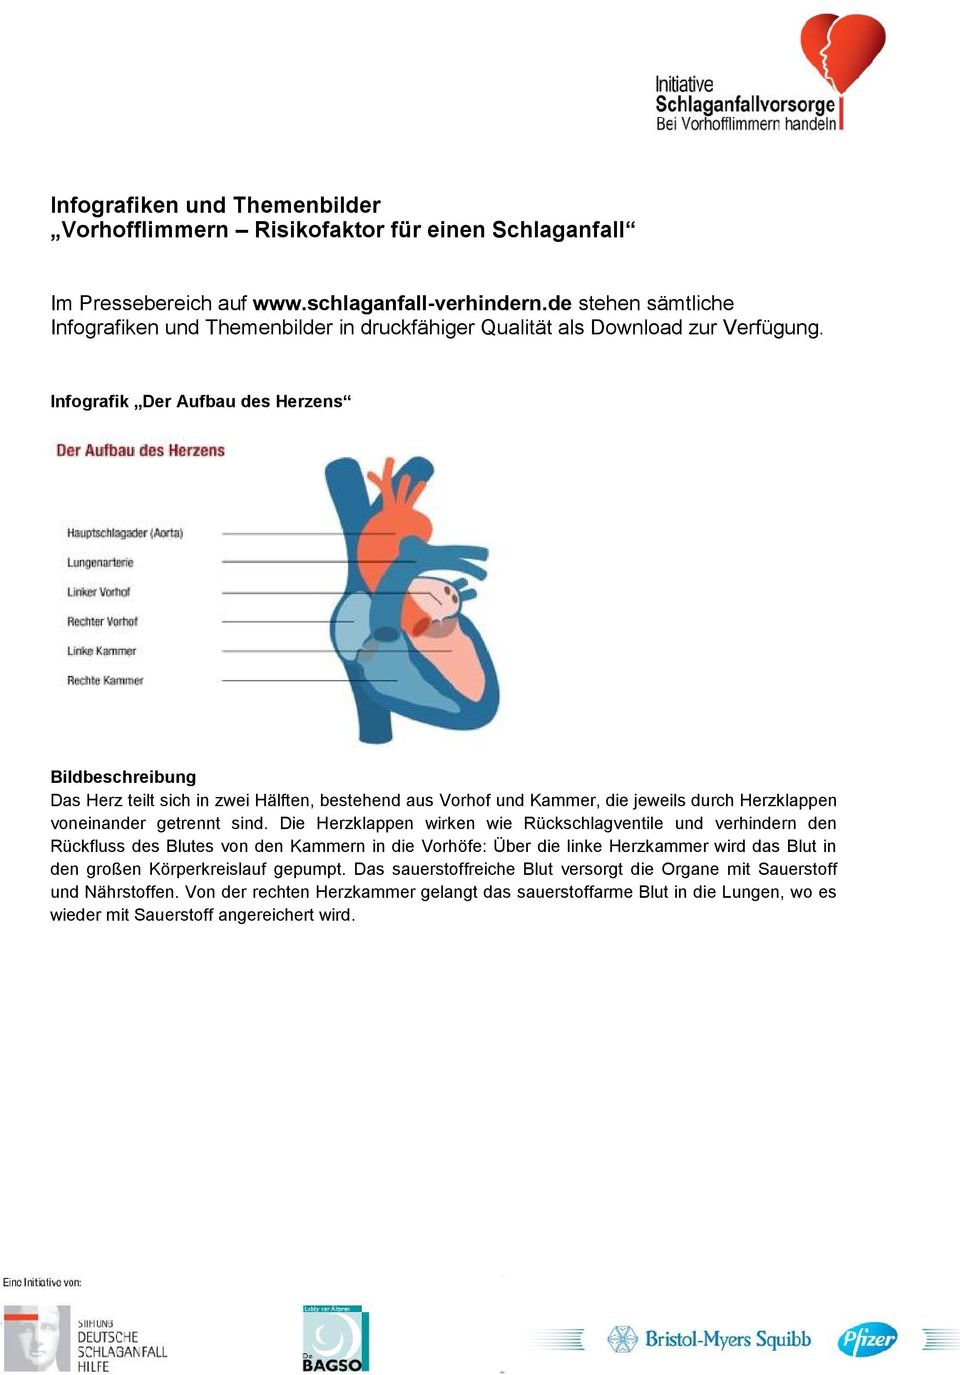 Infografik Der Aufbau des Herzens Das Herz teilt sich in zwei Hälften, bestehend aus Vorhof und Kammer, die jeweils durch Herzklappen voneinander getrennt sind.